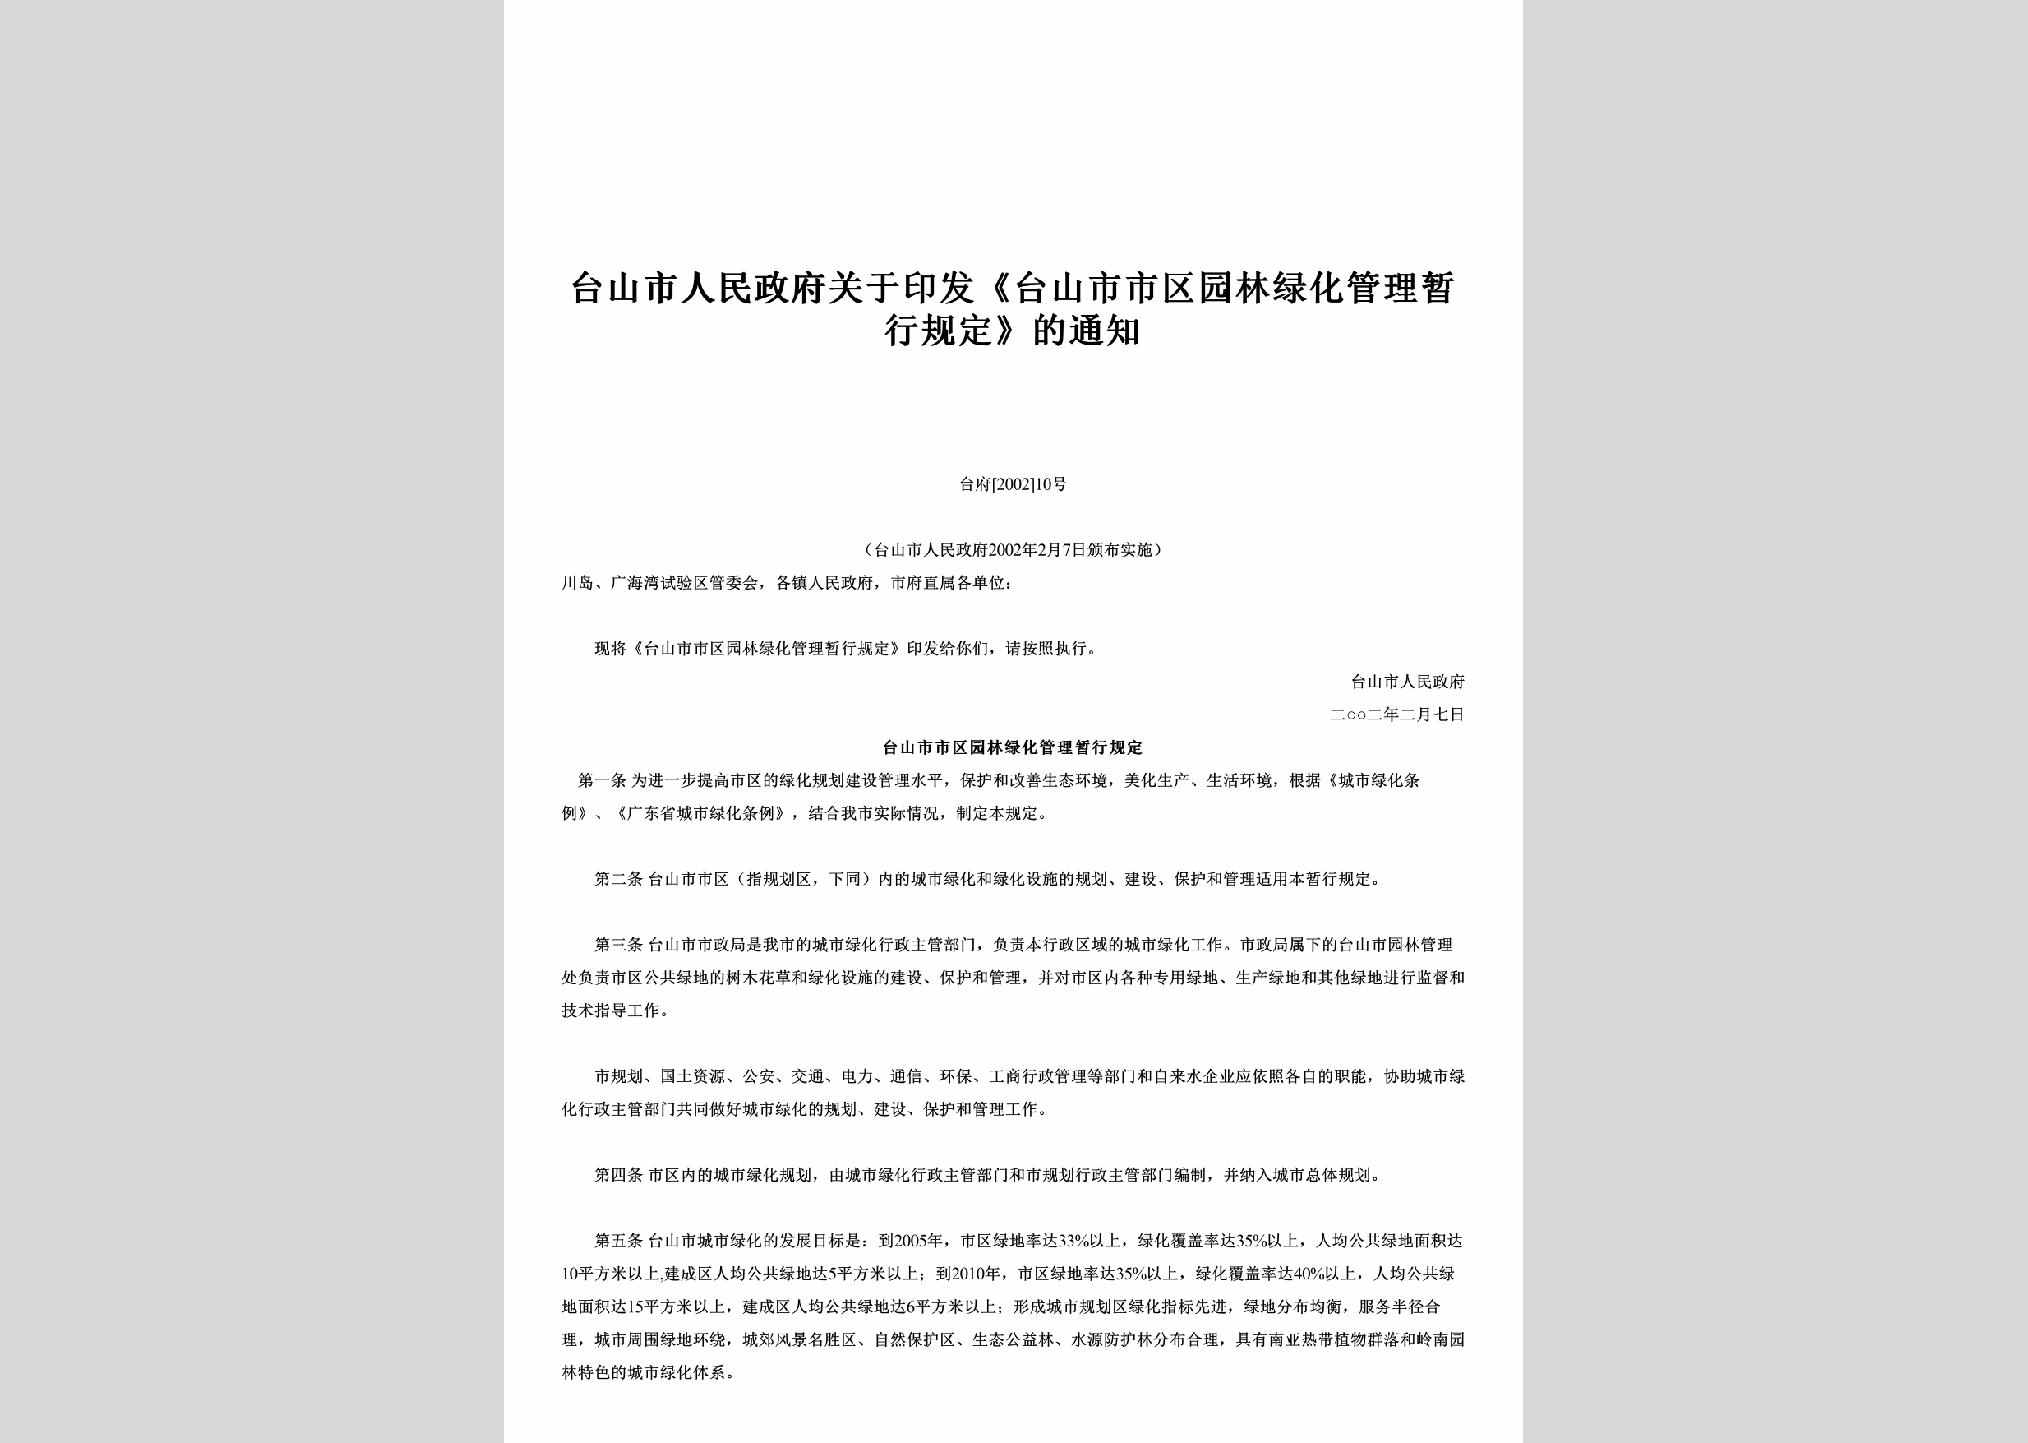 台府[2002]10号：关于印发《台山市市区园林绿化管理暂行规定》的通知